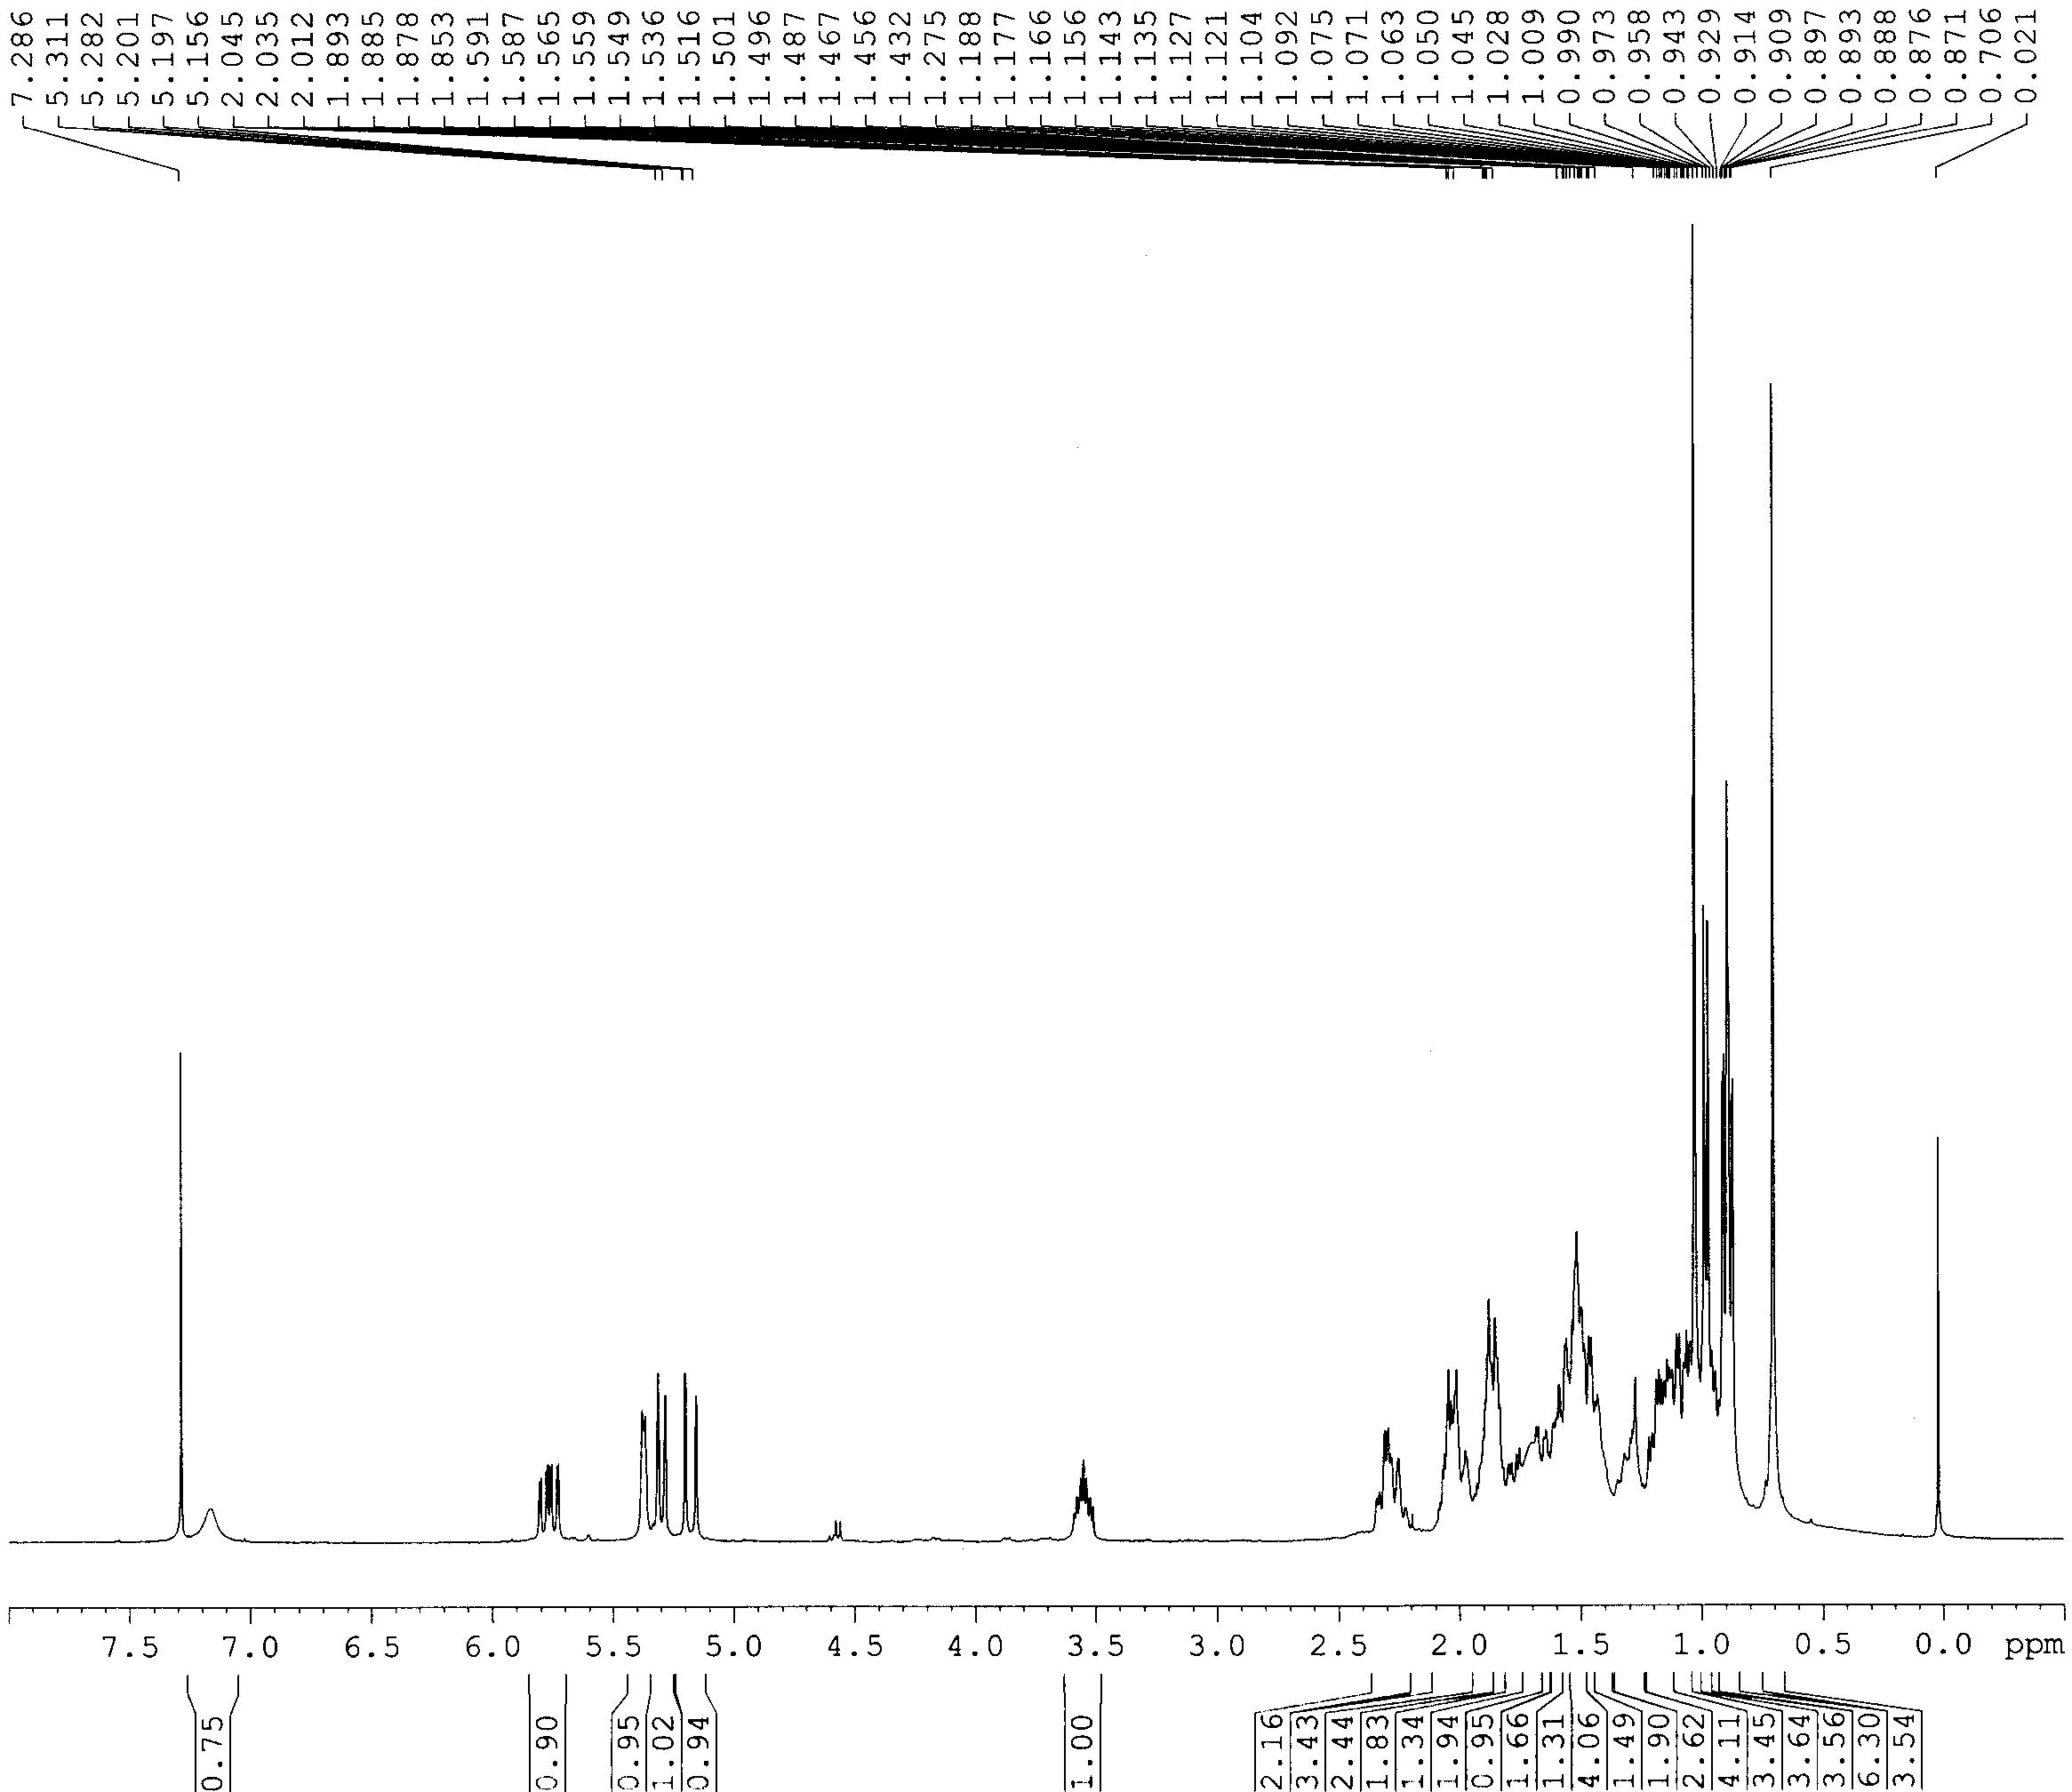 1H-NMR spectrum of compound 22